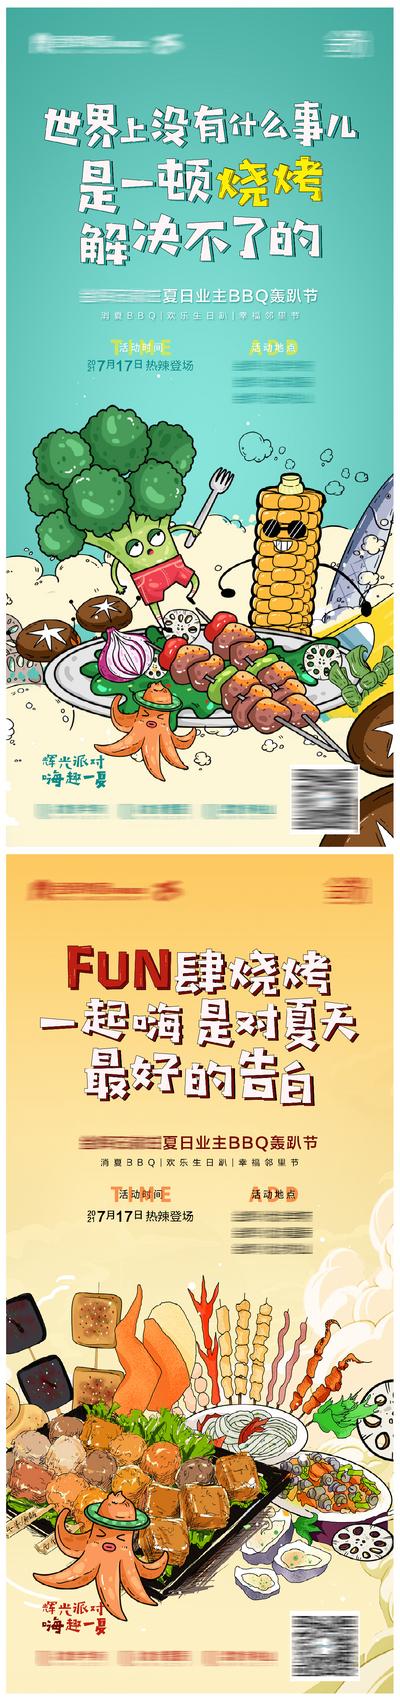 南门网 海报 地产 活动  烧烤  美食 插画 创意 系列 